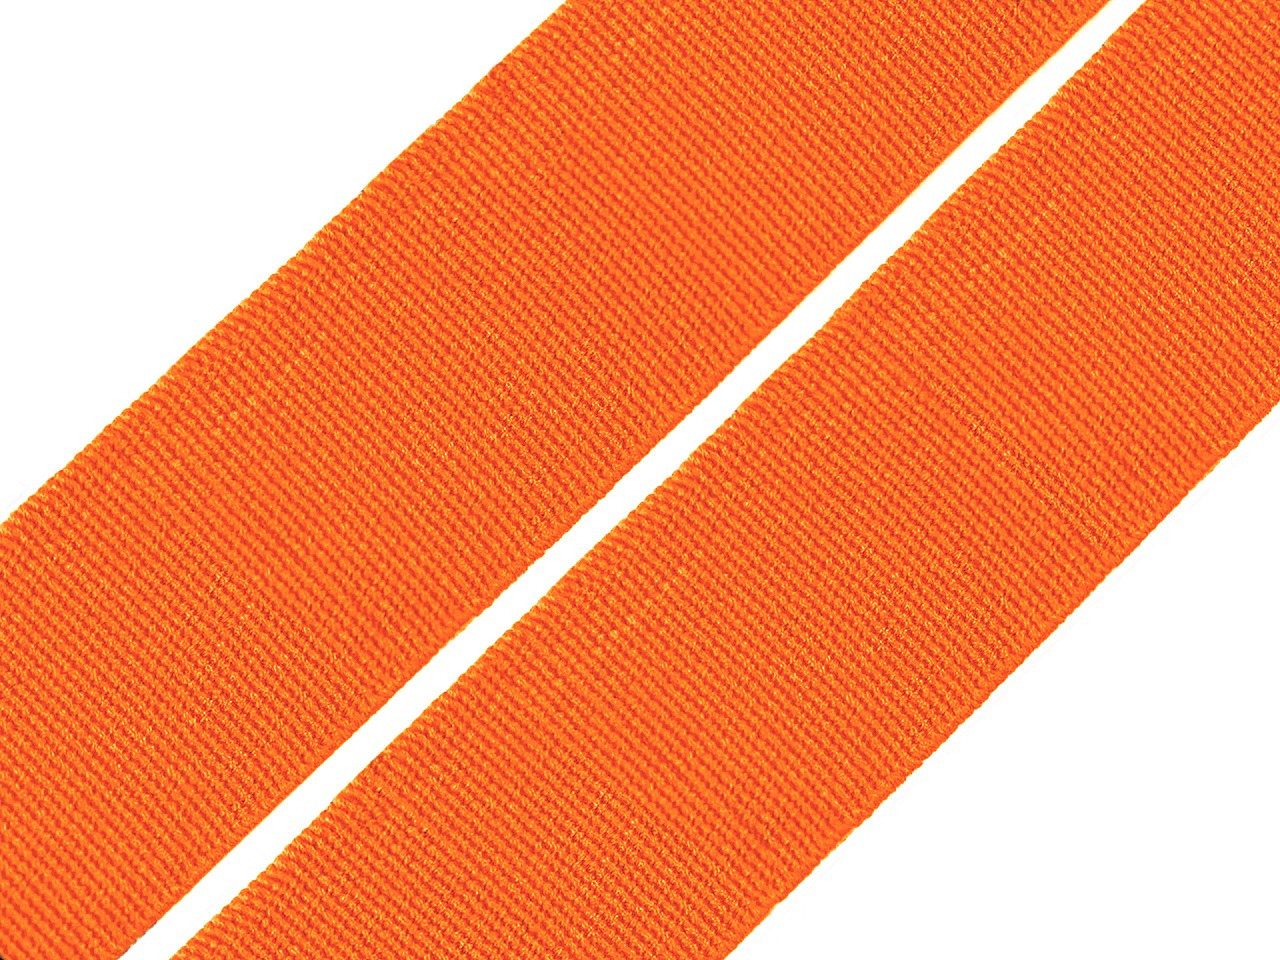 Pruženka hladká šíře 20 mm tkaná barevná, barva 4302 oranžová dýňová